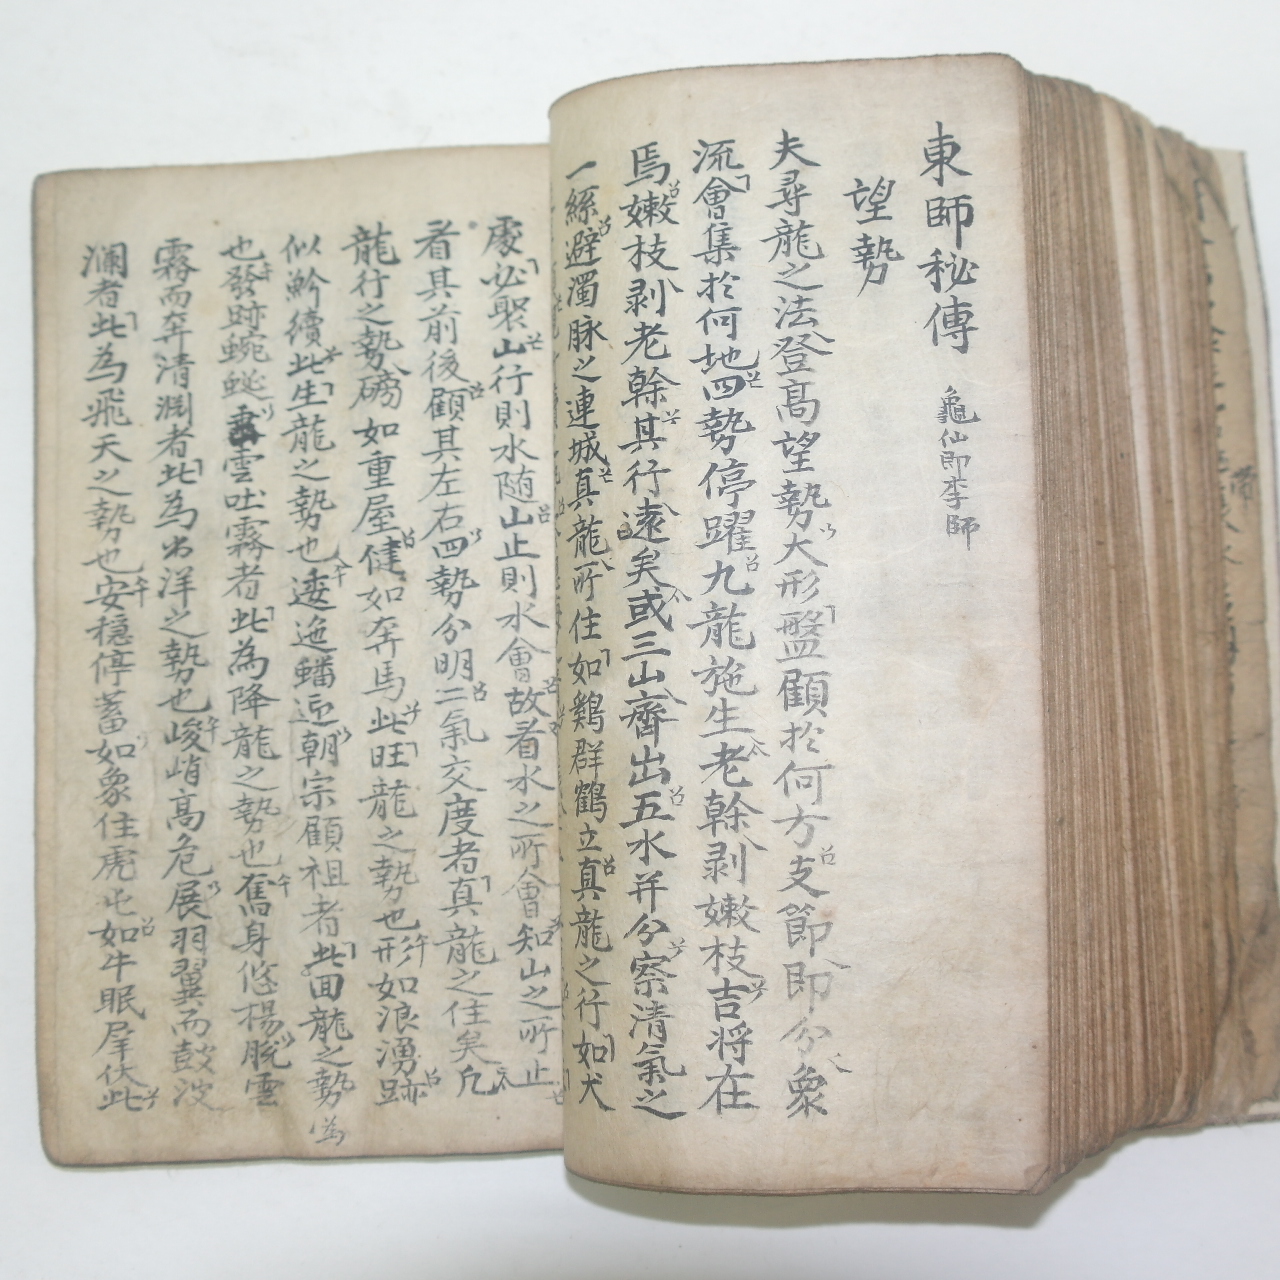 300년이상된 음양(陰陽) 역(易)관련 고필사본 1책